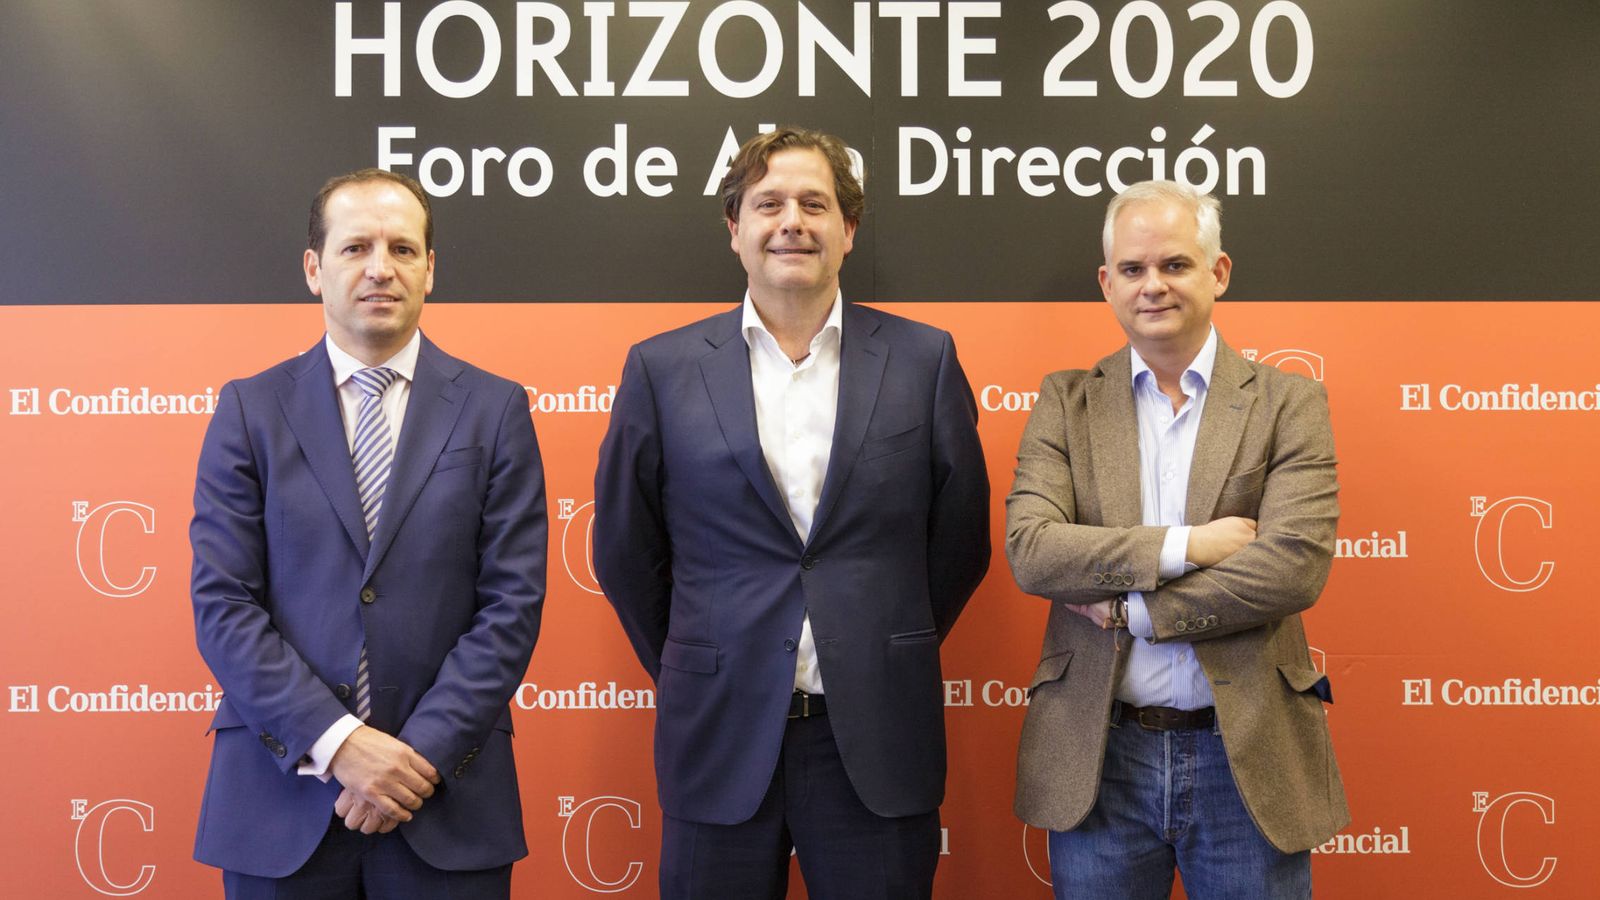 Foto: De izquierda a derecha: Juan Carlos Ramos, socio responsable de PwC en Galicia, Ignacio Rivera, CEO de Estrella Galicia, y Alberto Artero, director general de El Confidencial.